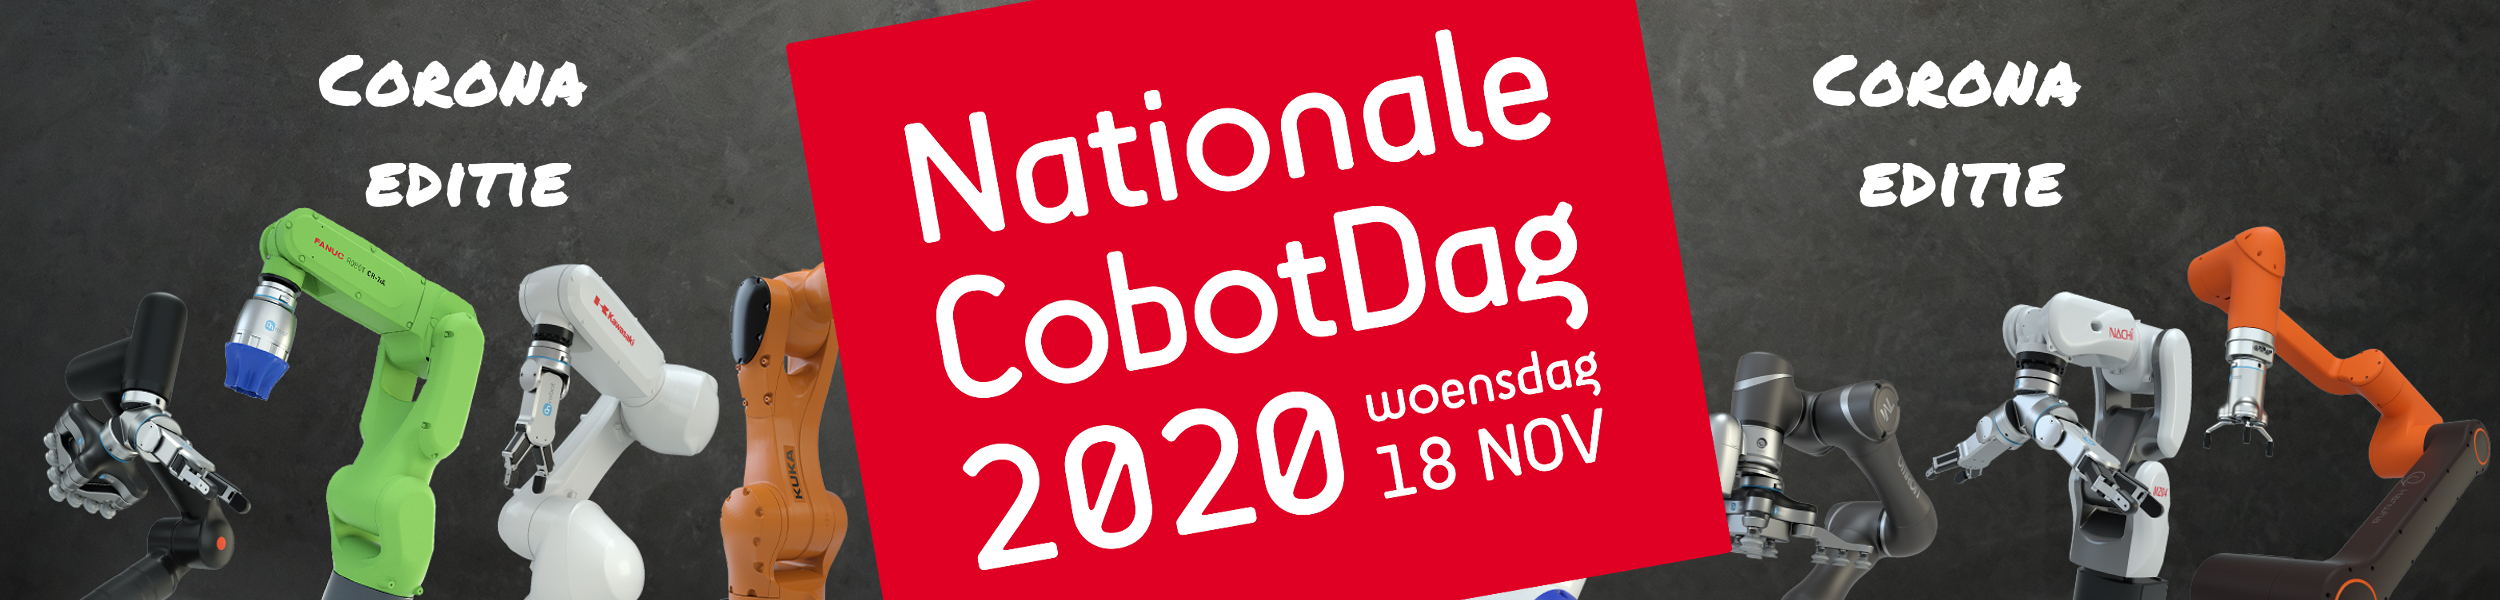 Nationale Cobot Dag op 18 november